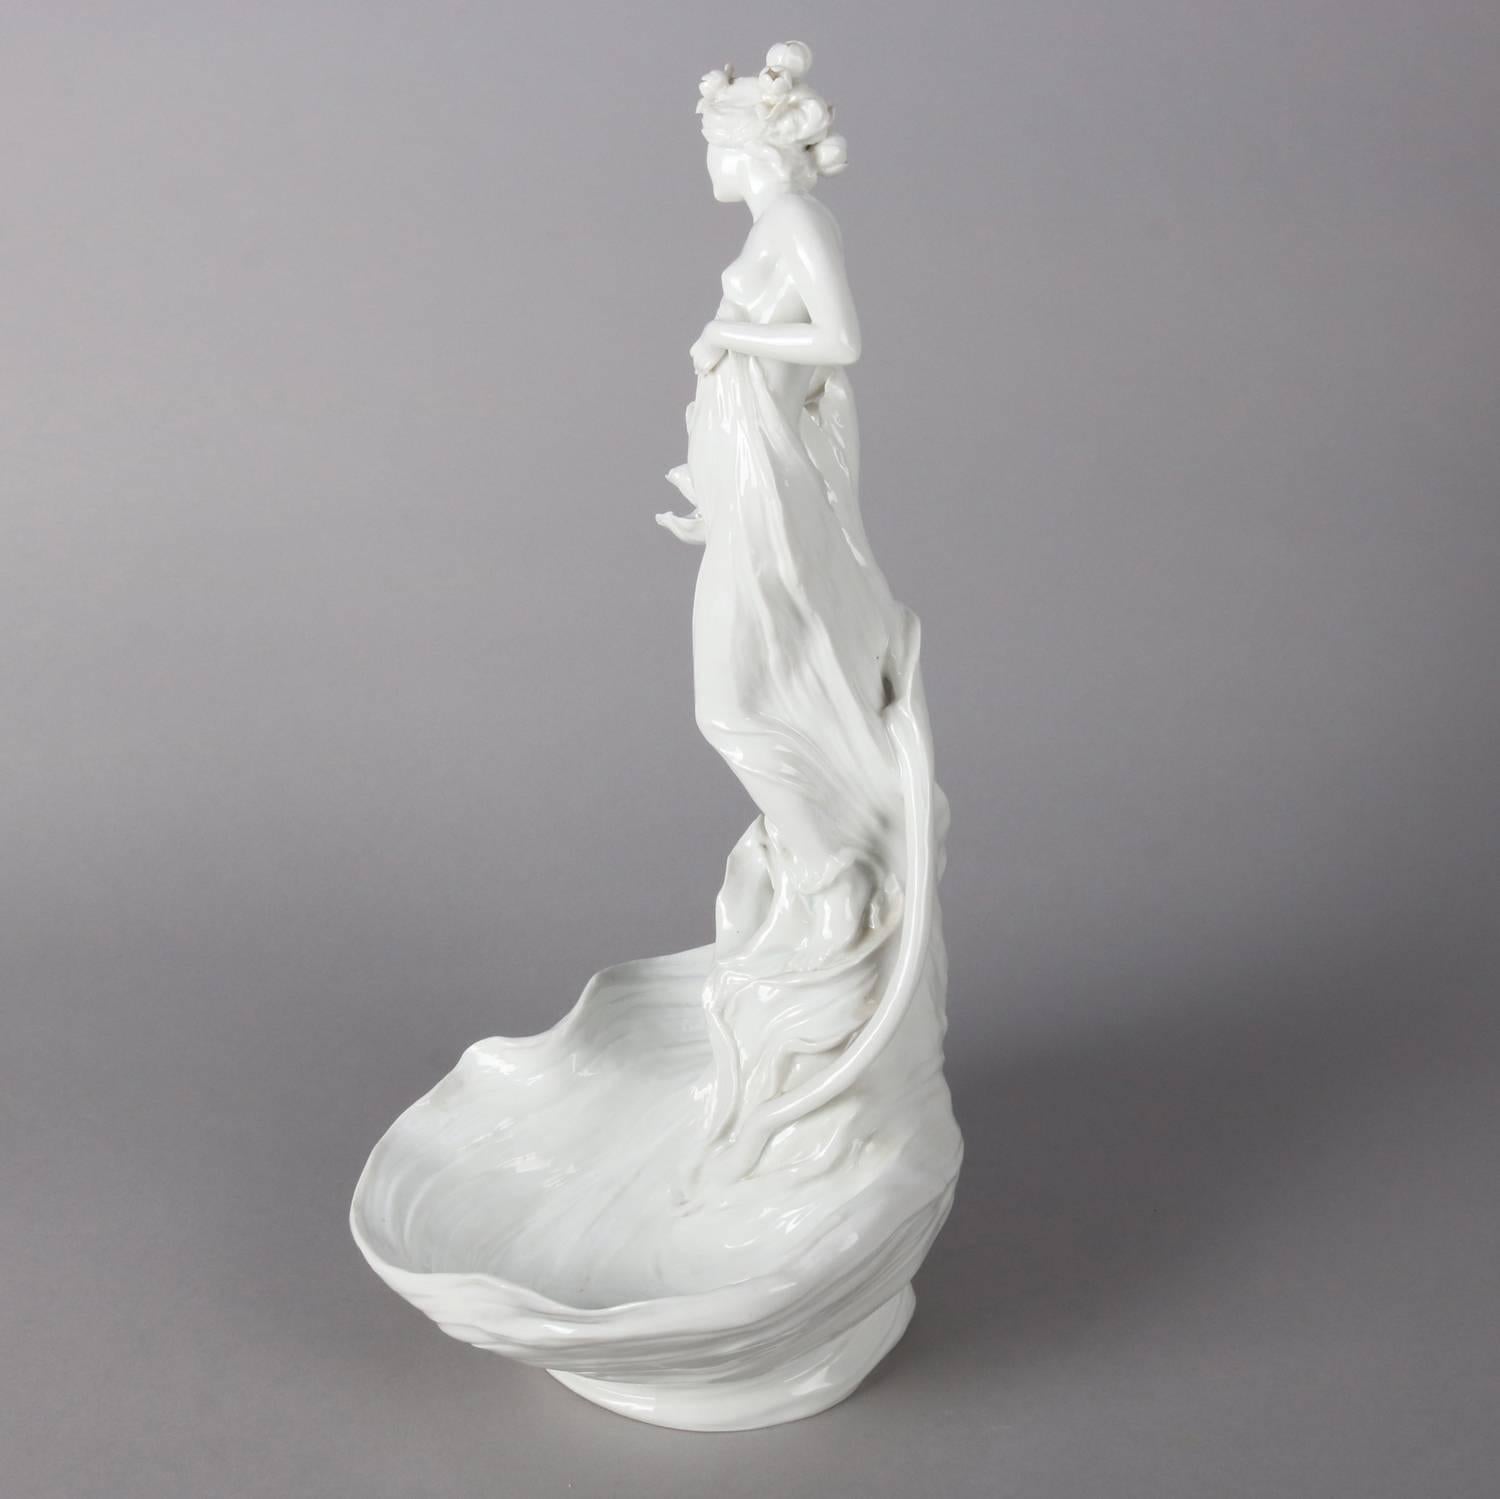 20th Century Art Nouveau Style Figural Blanc-de-Chine Porcelain Display Bowl, Partial Nude